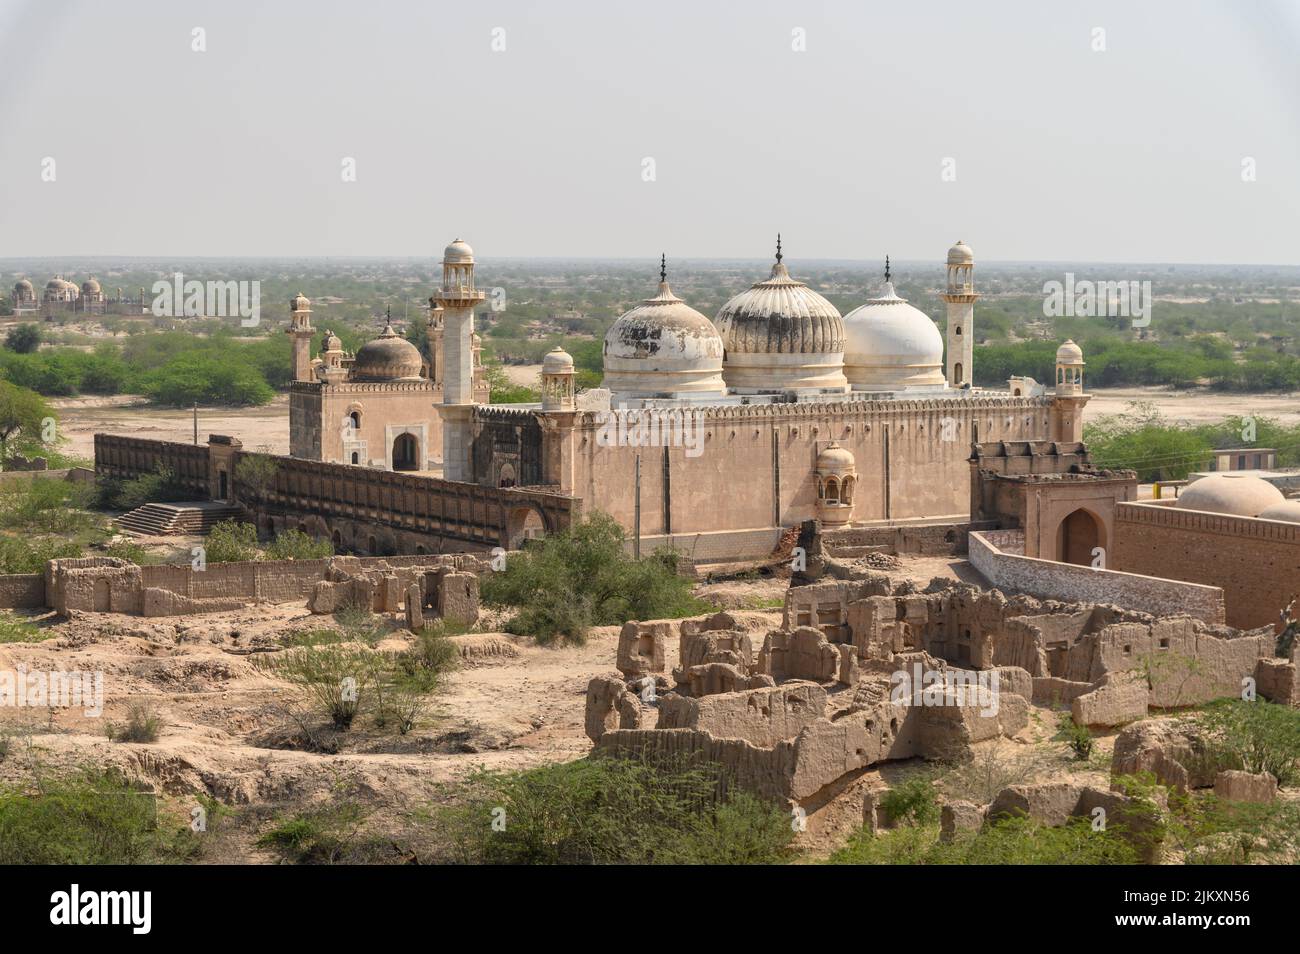 La mosquée Abbasi est une mosquée située dans la ville de Bahawalpur, fort Derawar, région du Cholistan au Punjab, province du Pakistan. Banque D'Images